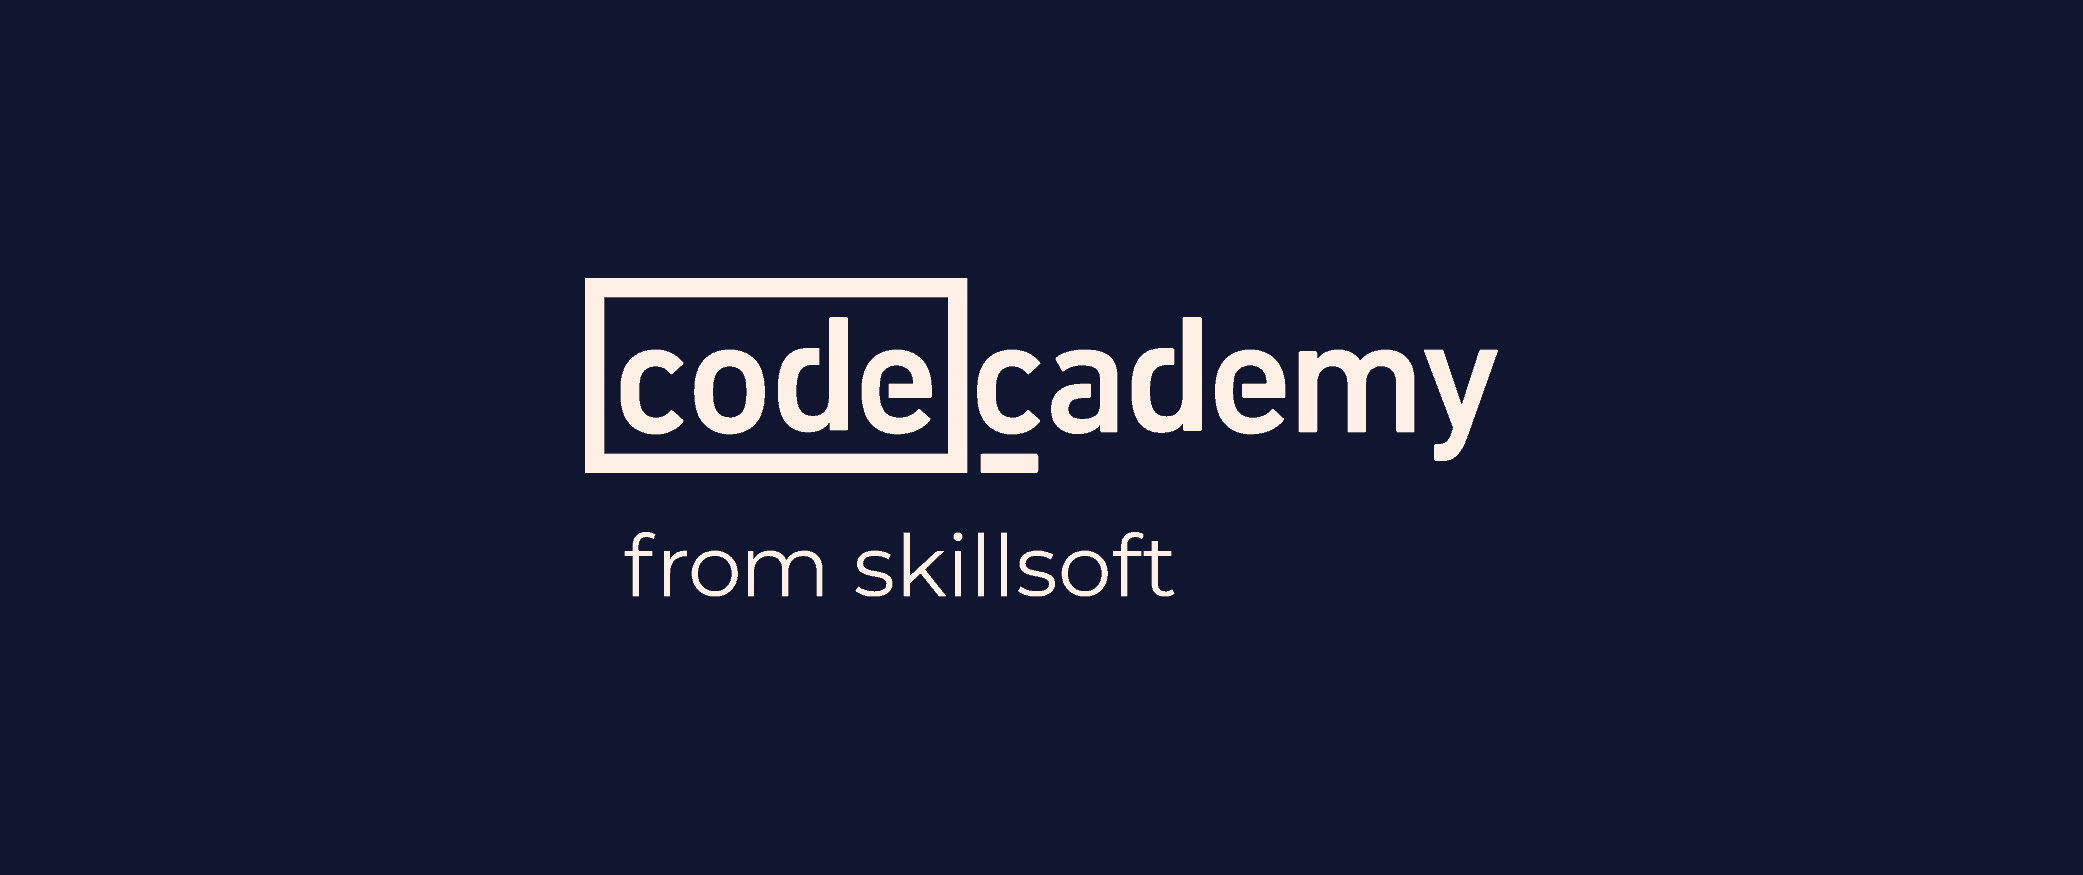 Codecademy chính thức là "Skillsoft Codecademy"